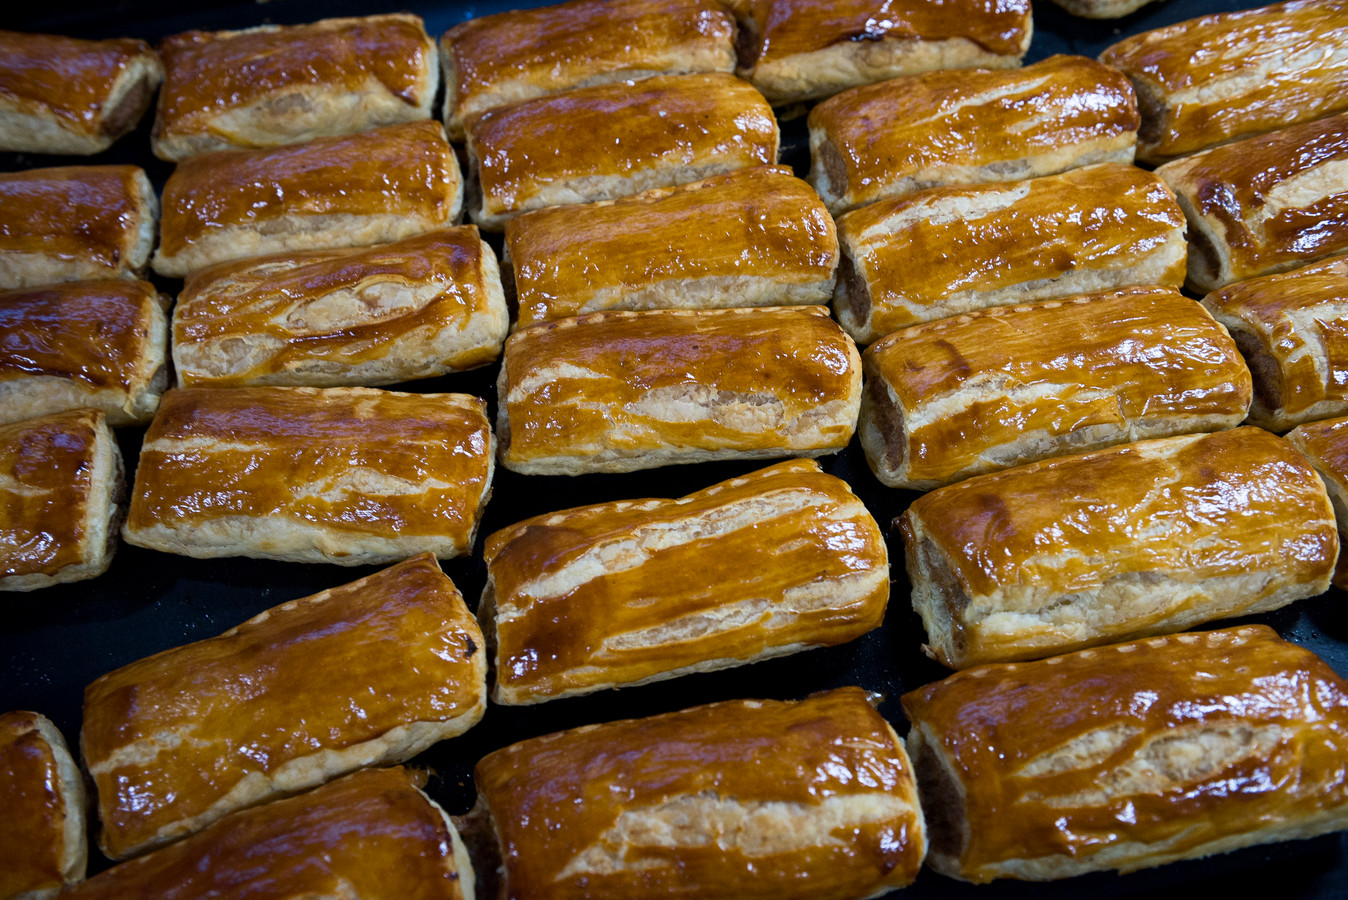 Warme saucijzenbroodjes uit de oven van bakker Verkerk.